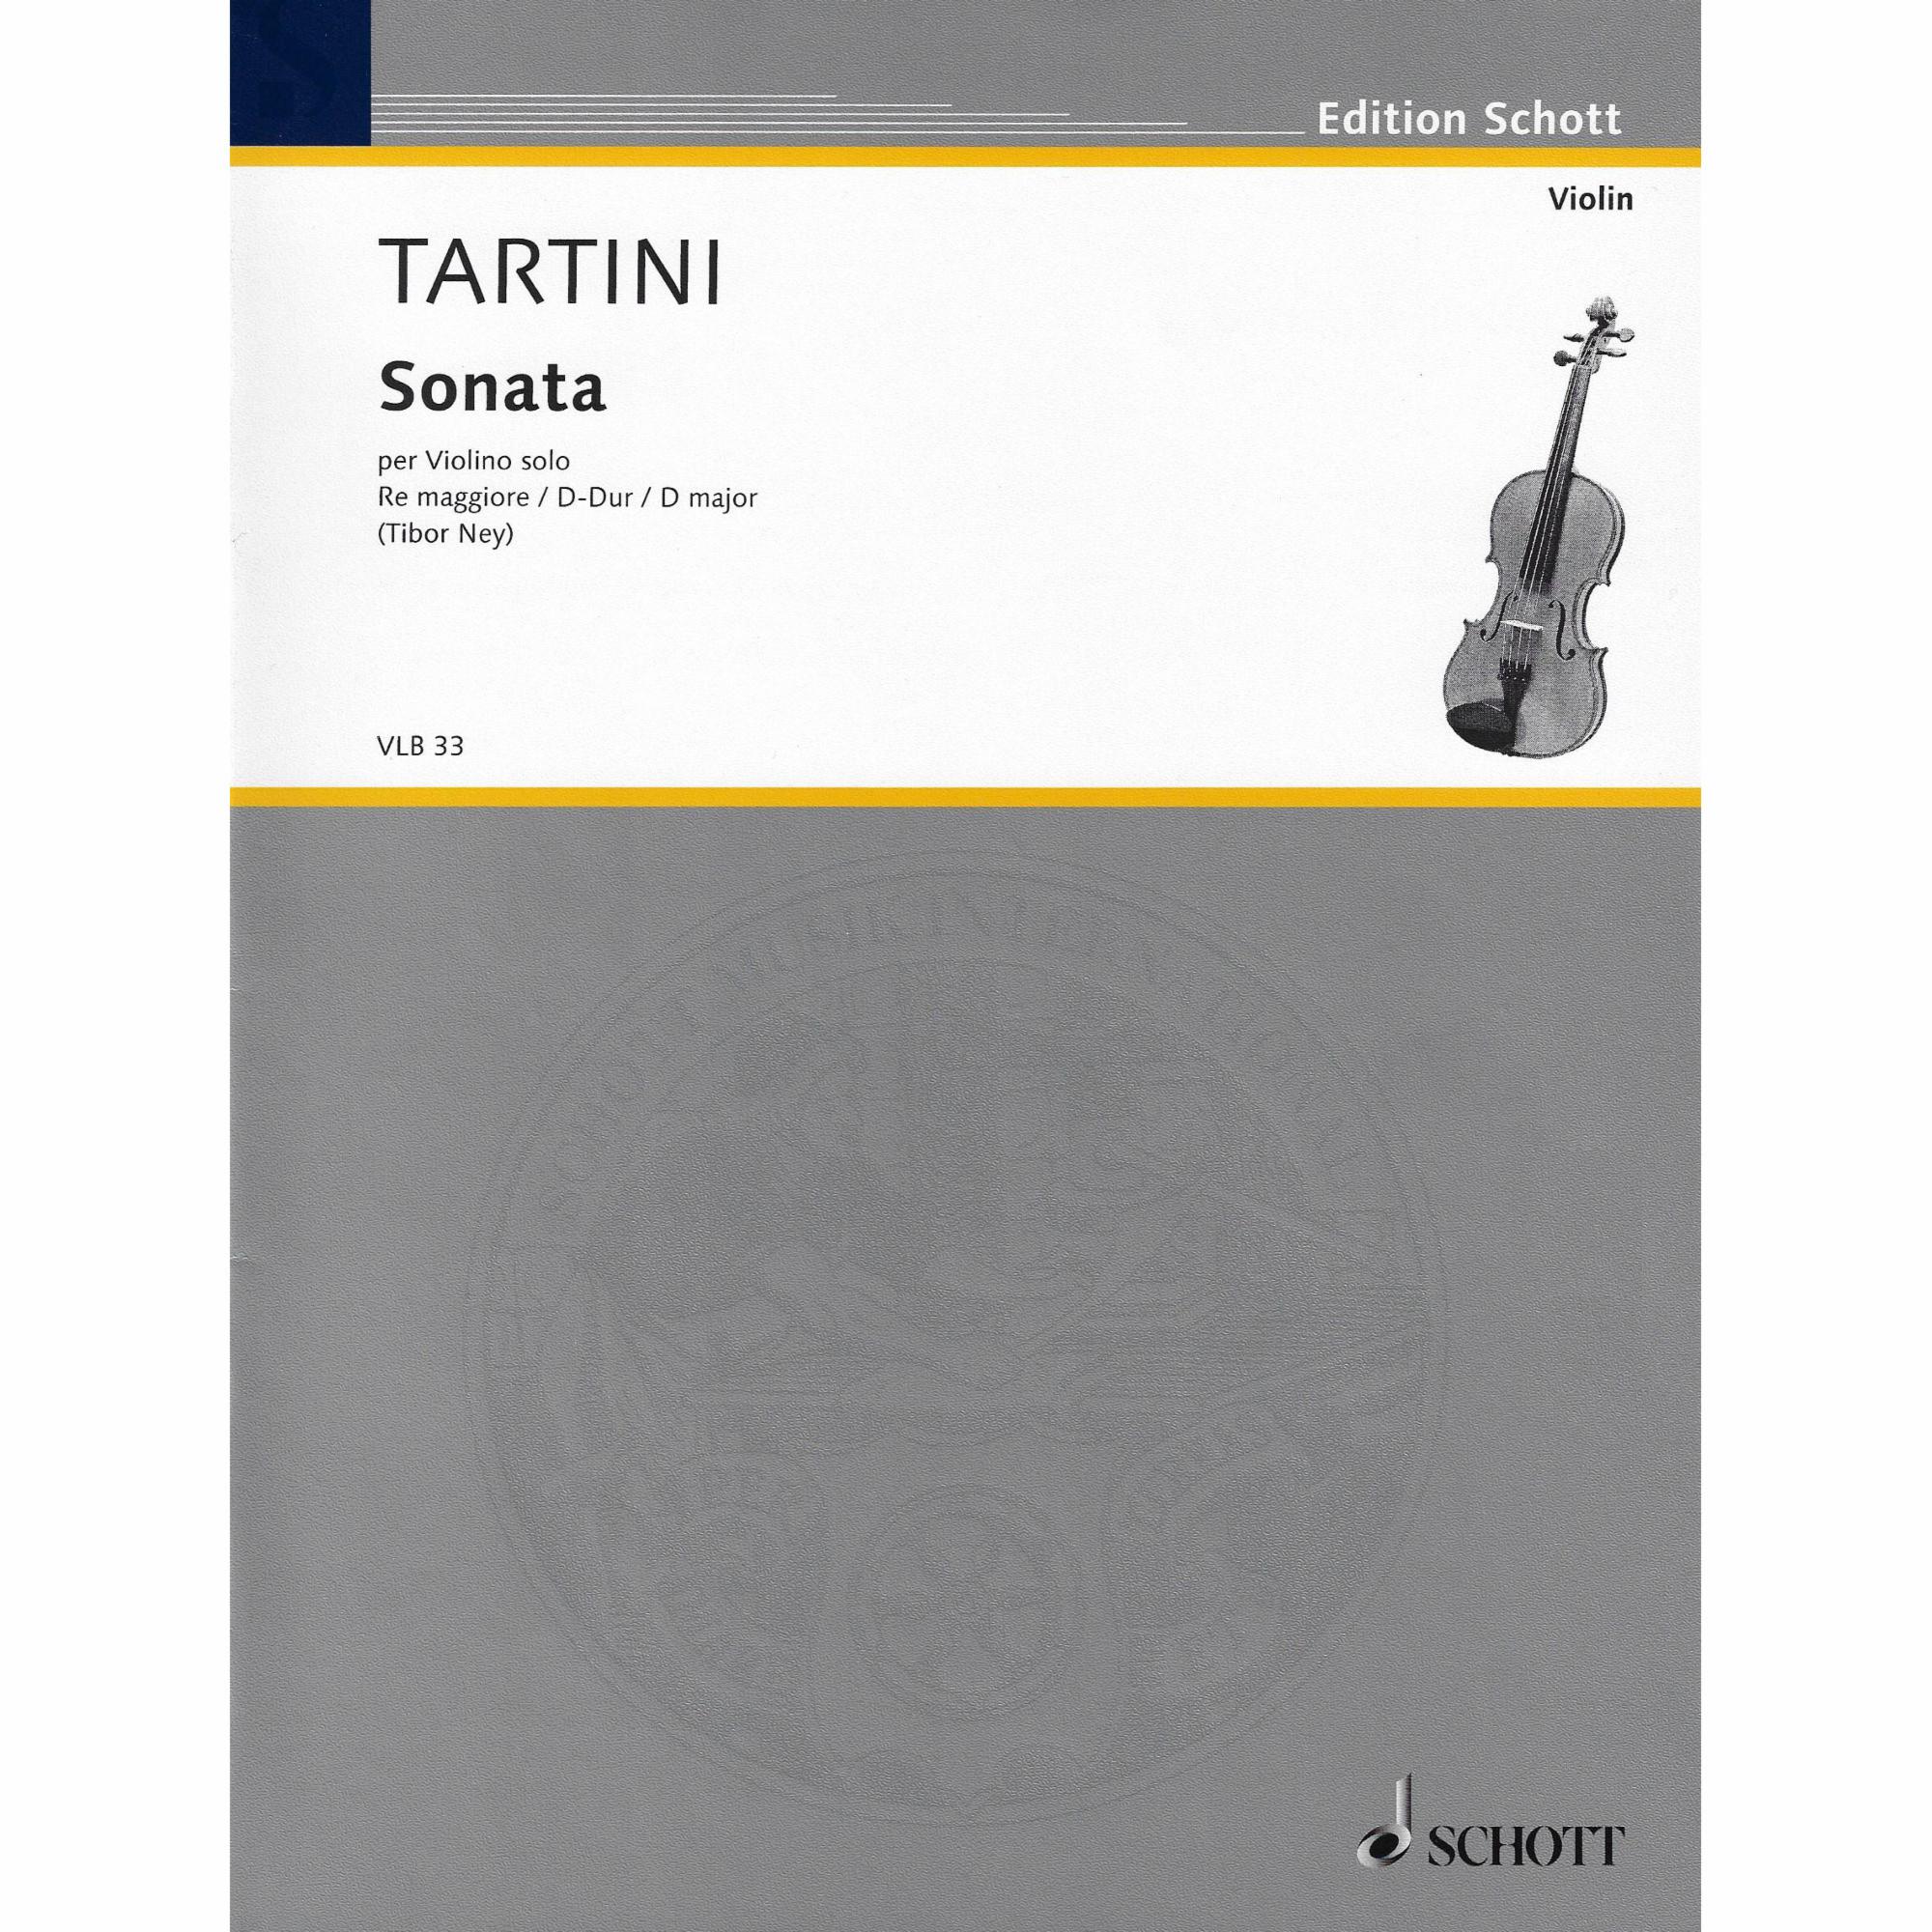 Tartini -- Sonata in D Major for Solo Violin